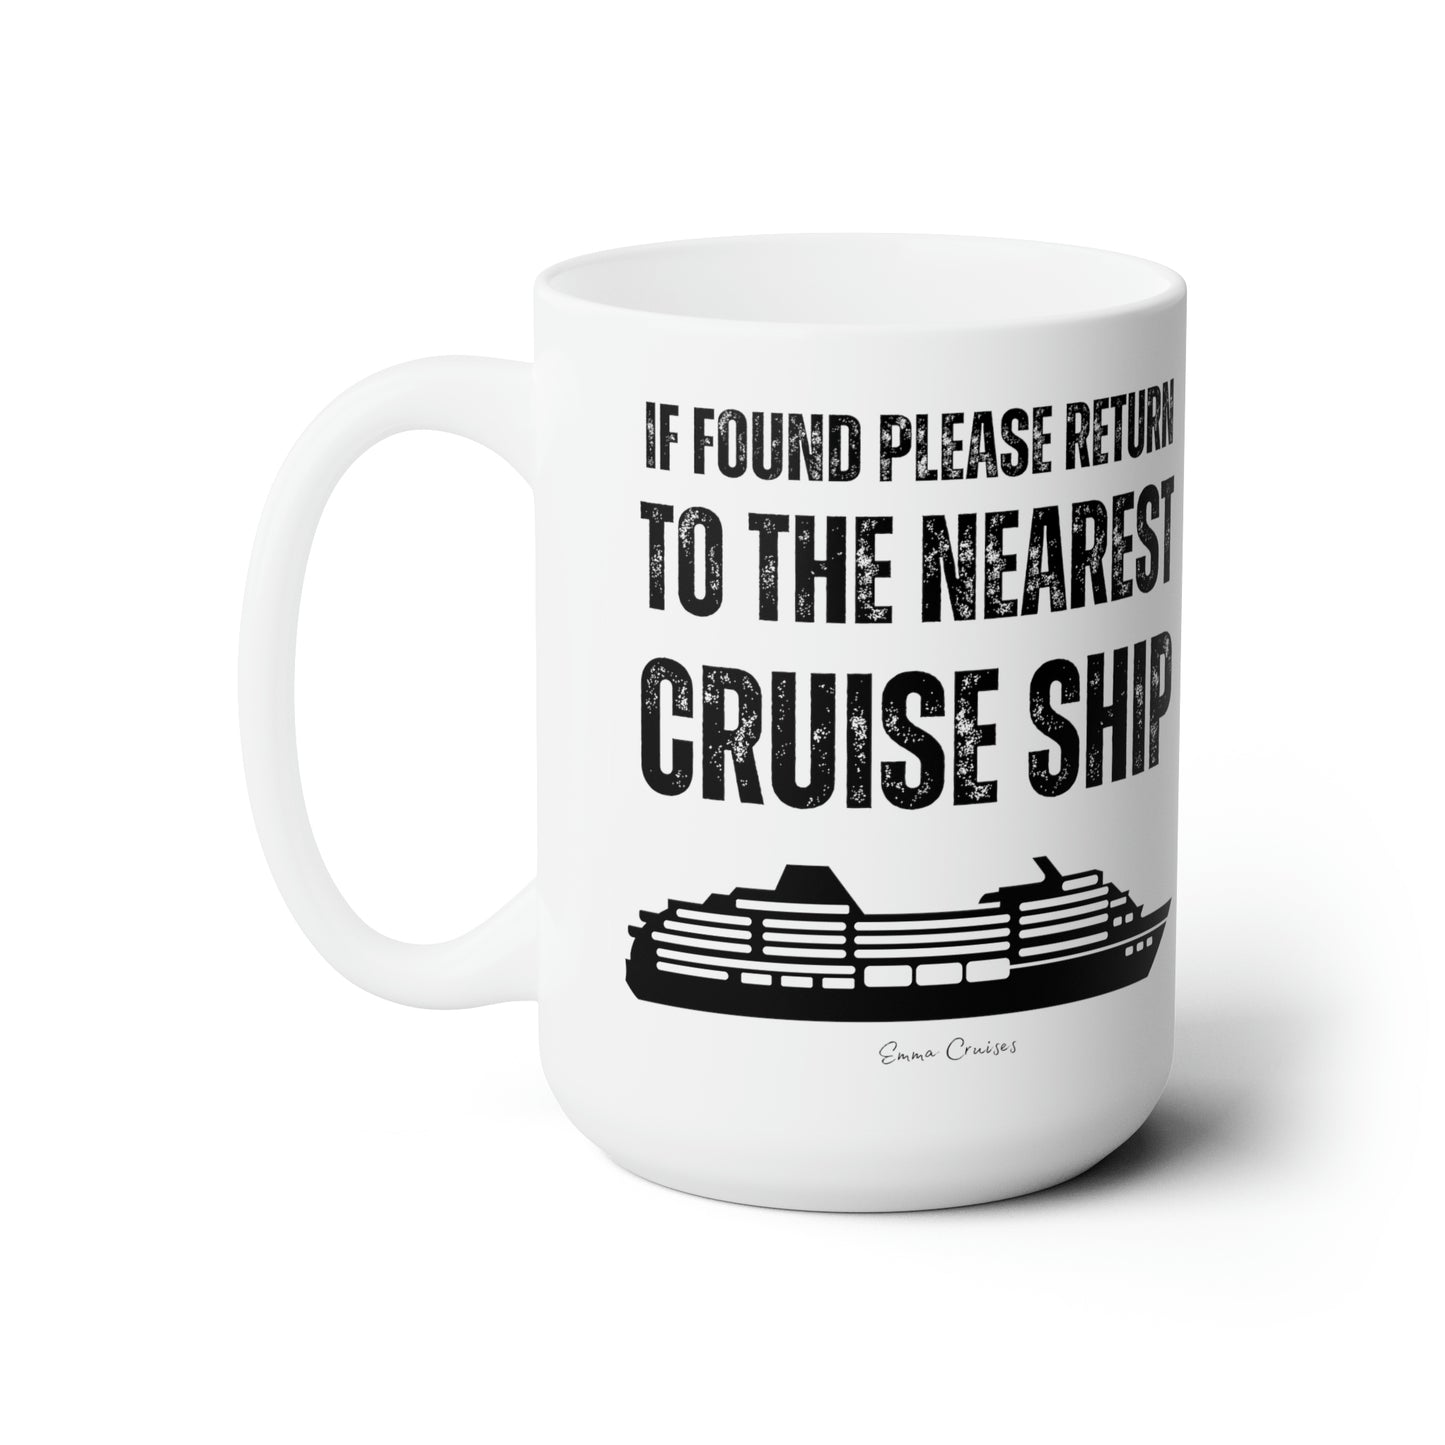 Return to Cruise Ship - Ceramic Mug